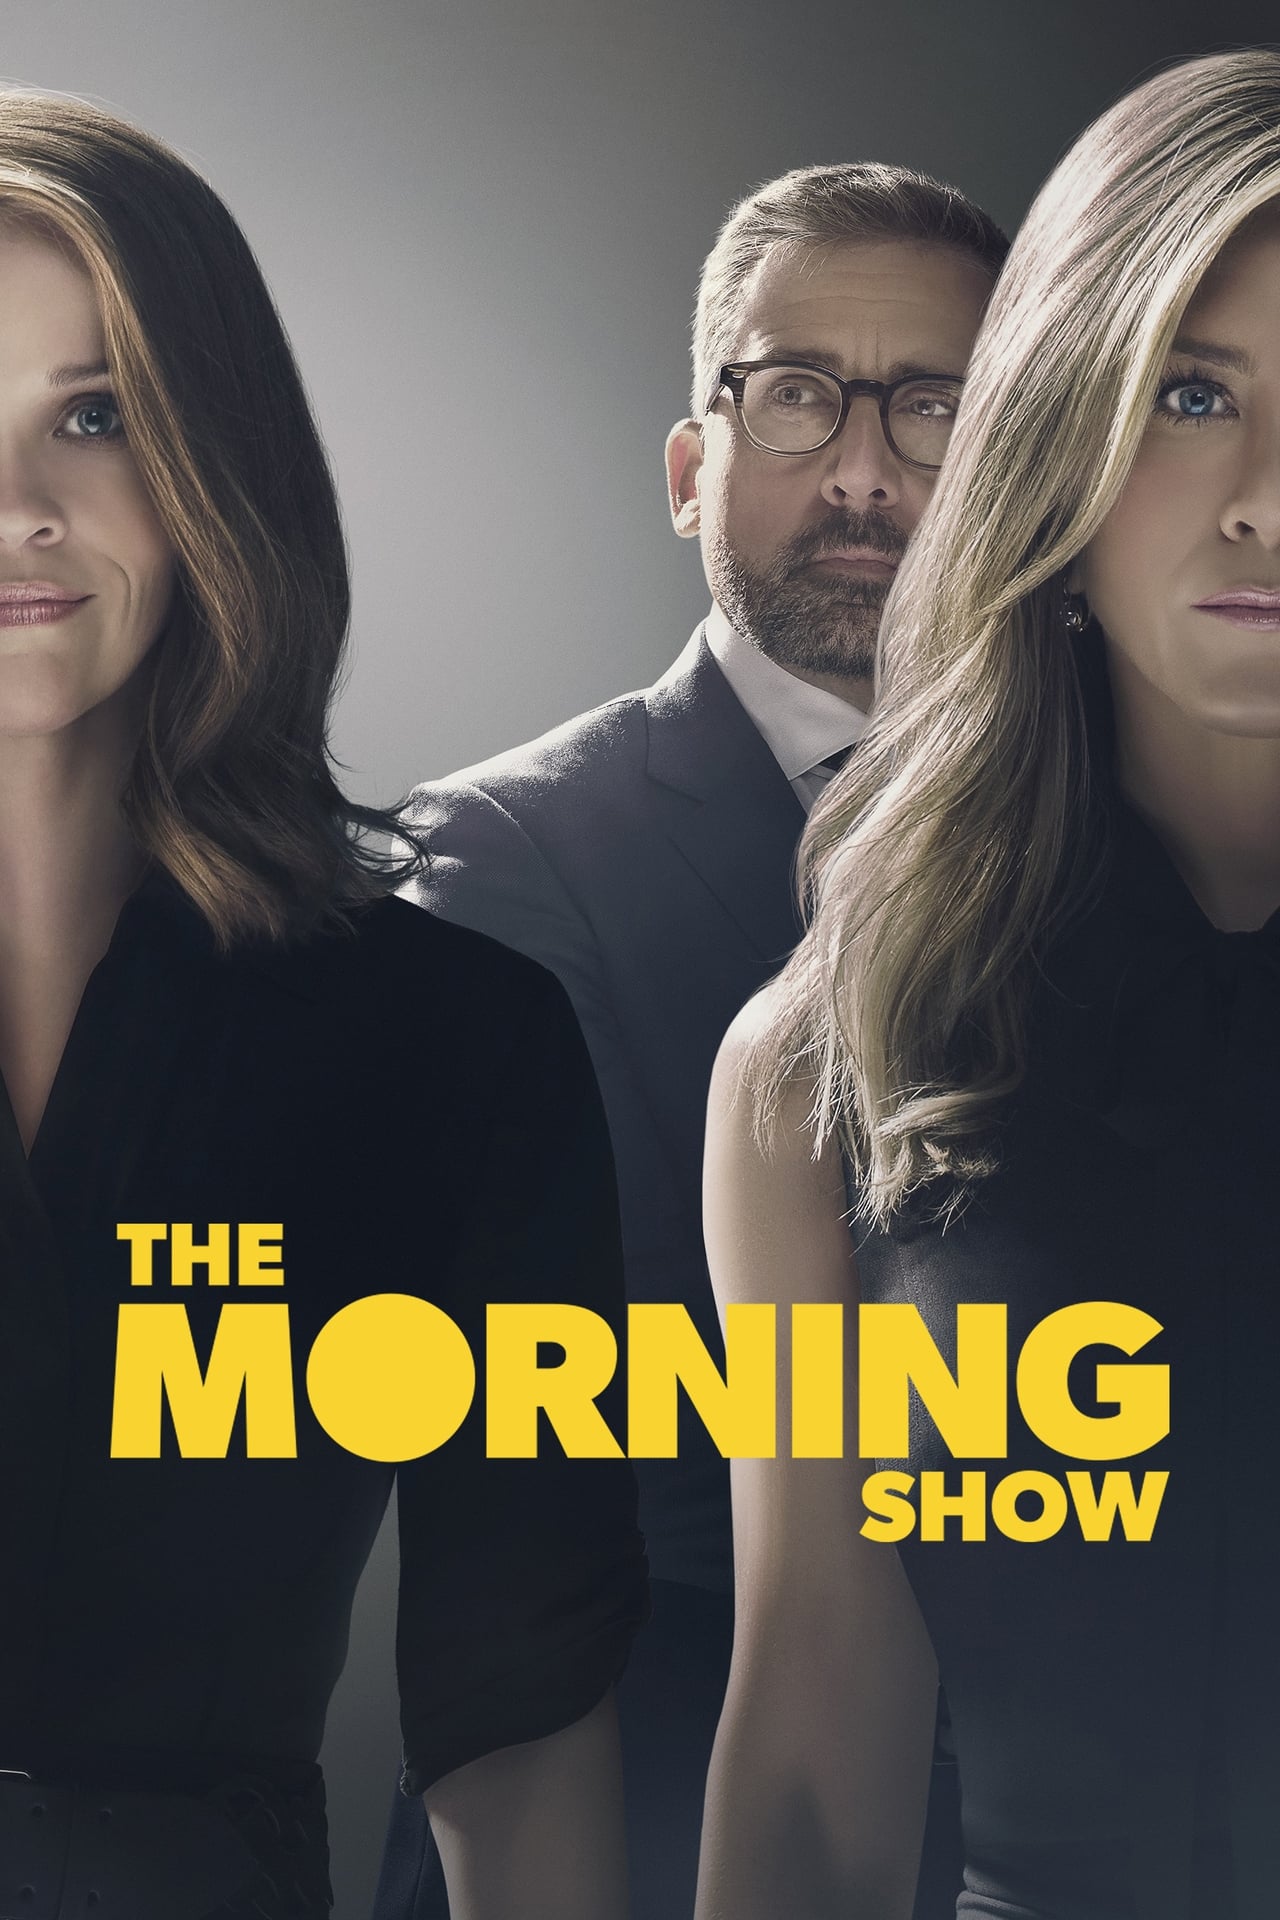 The Morning Show (season 2)